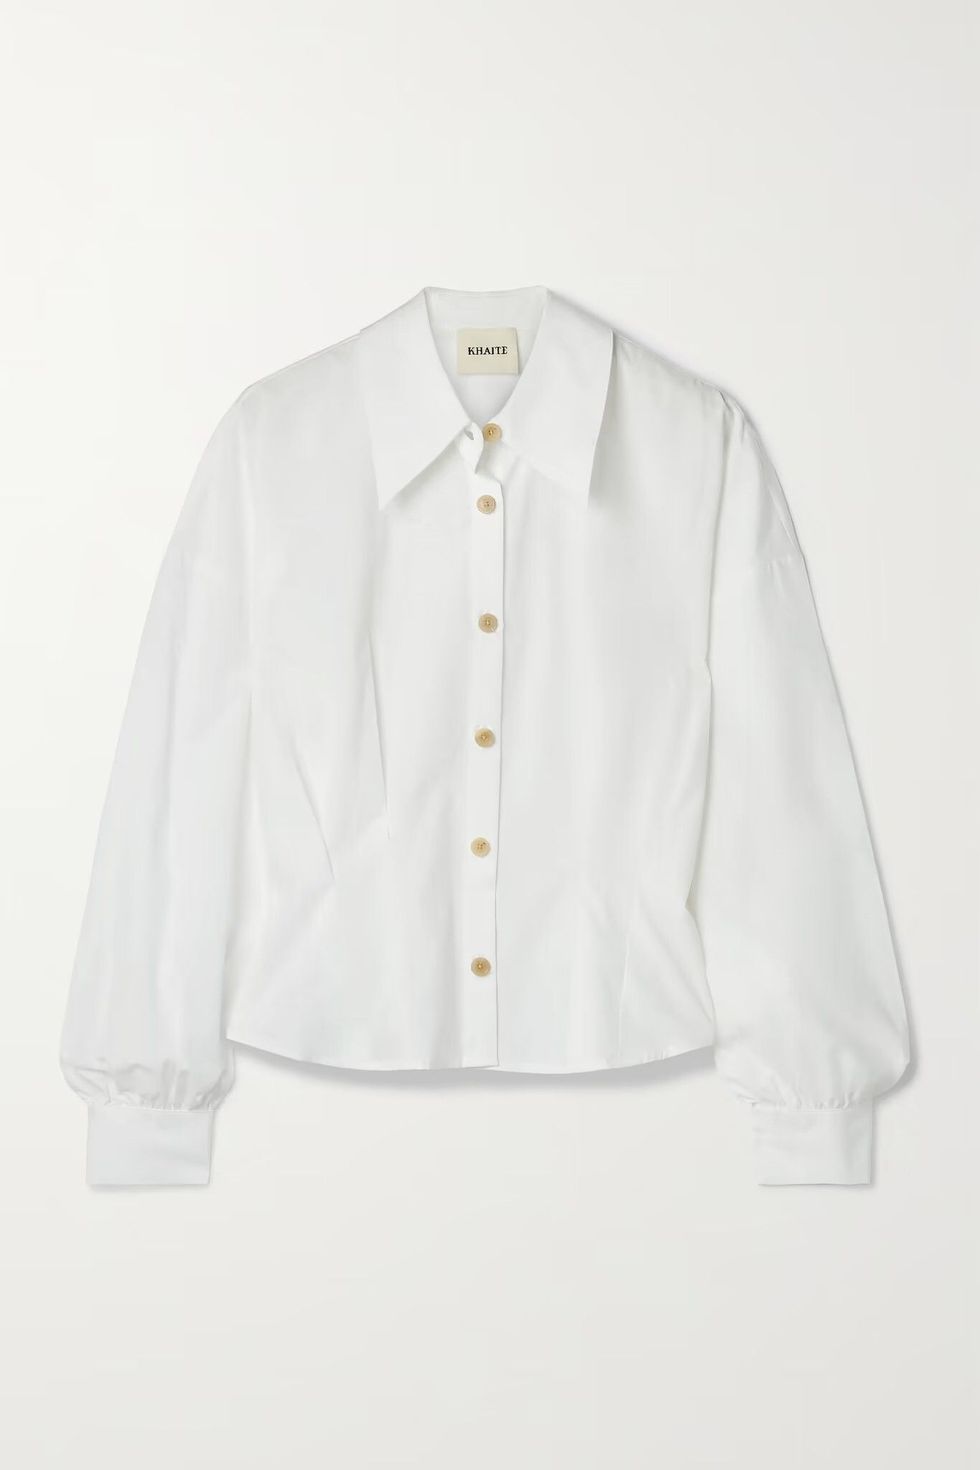 夏天寬鬆襯衫推薦：Khaite打摺設計白色襯衫